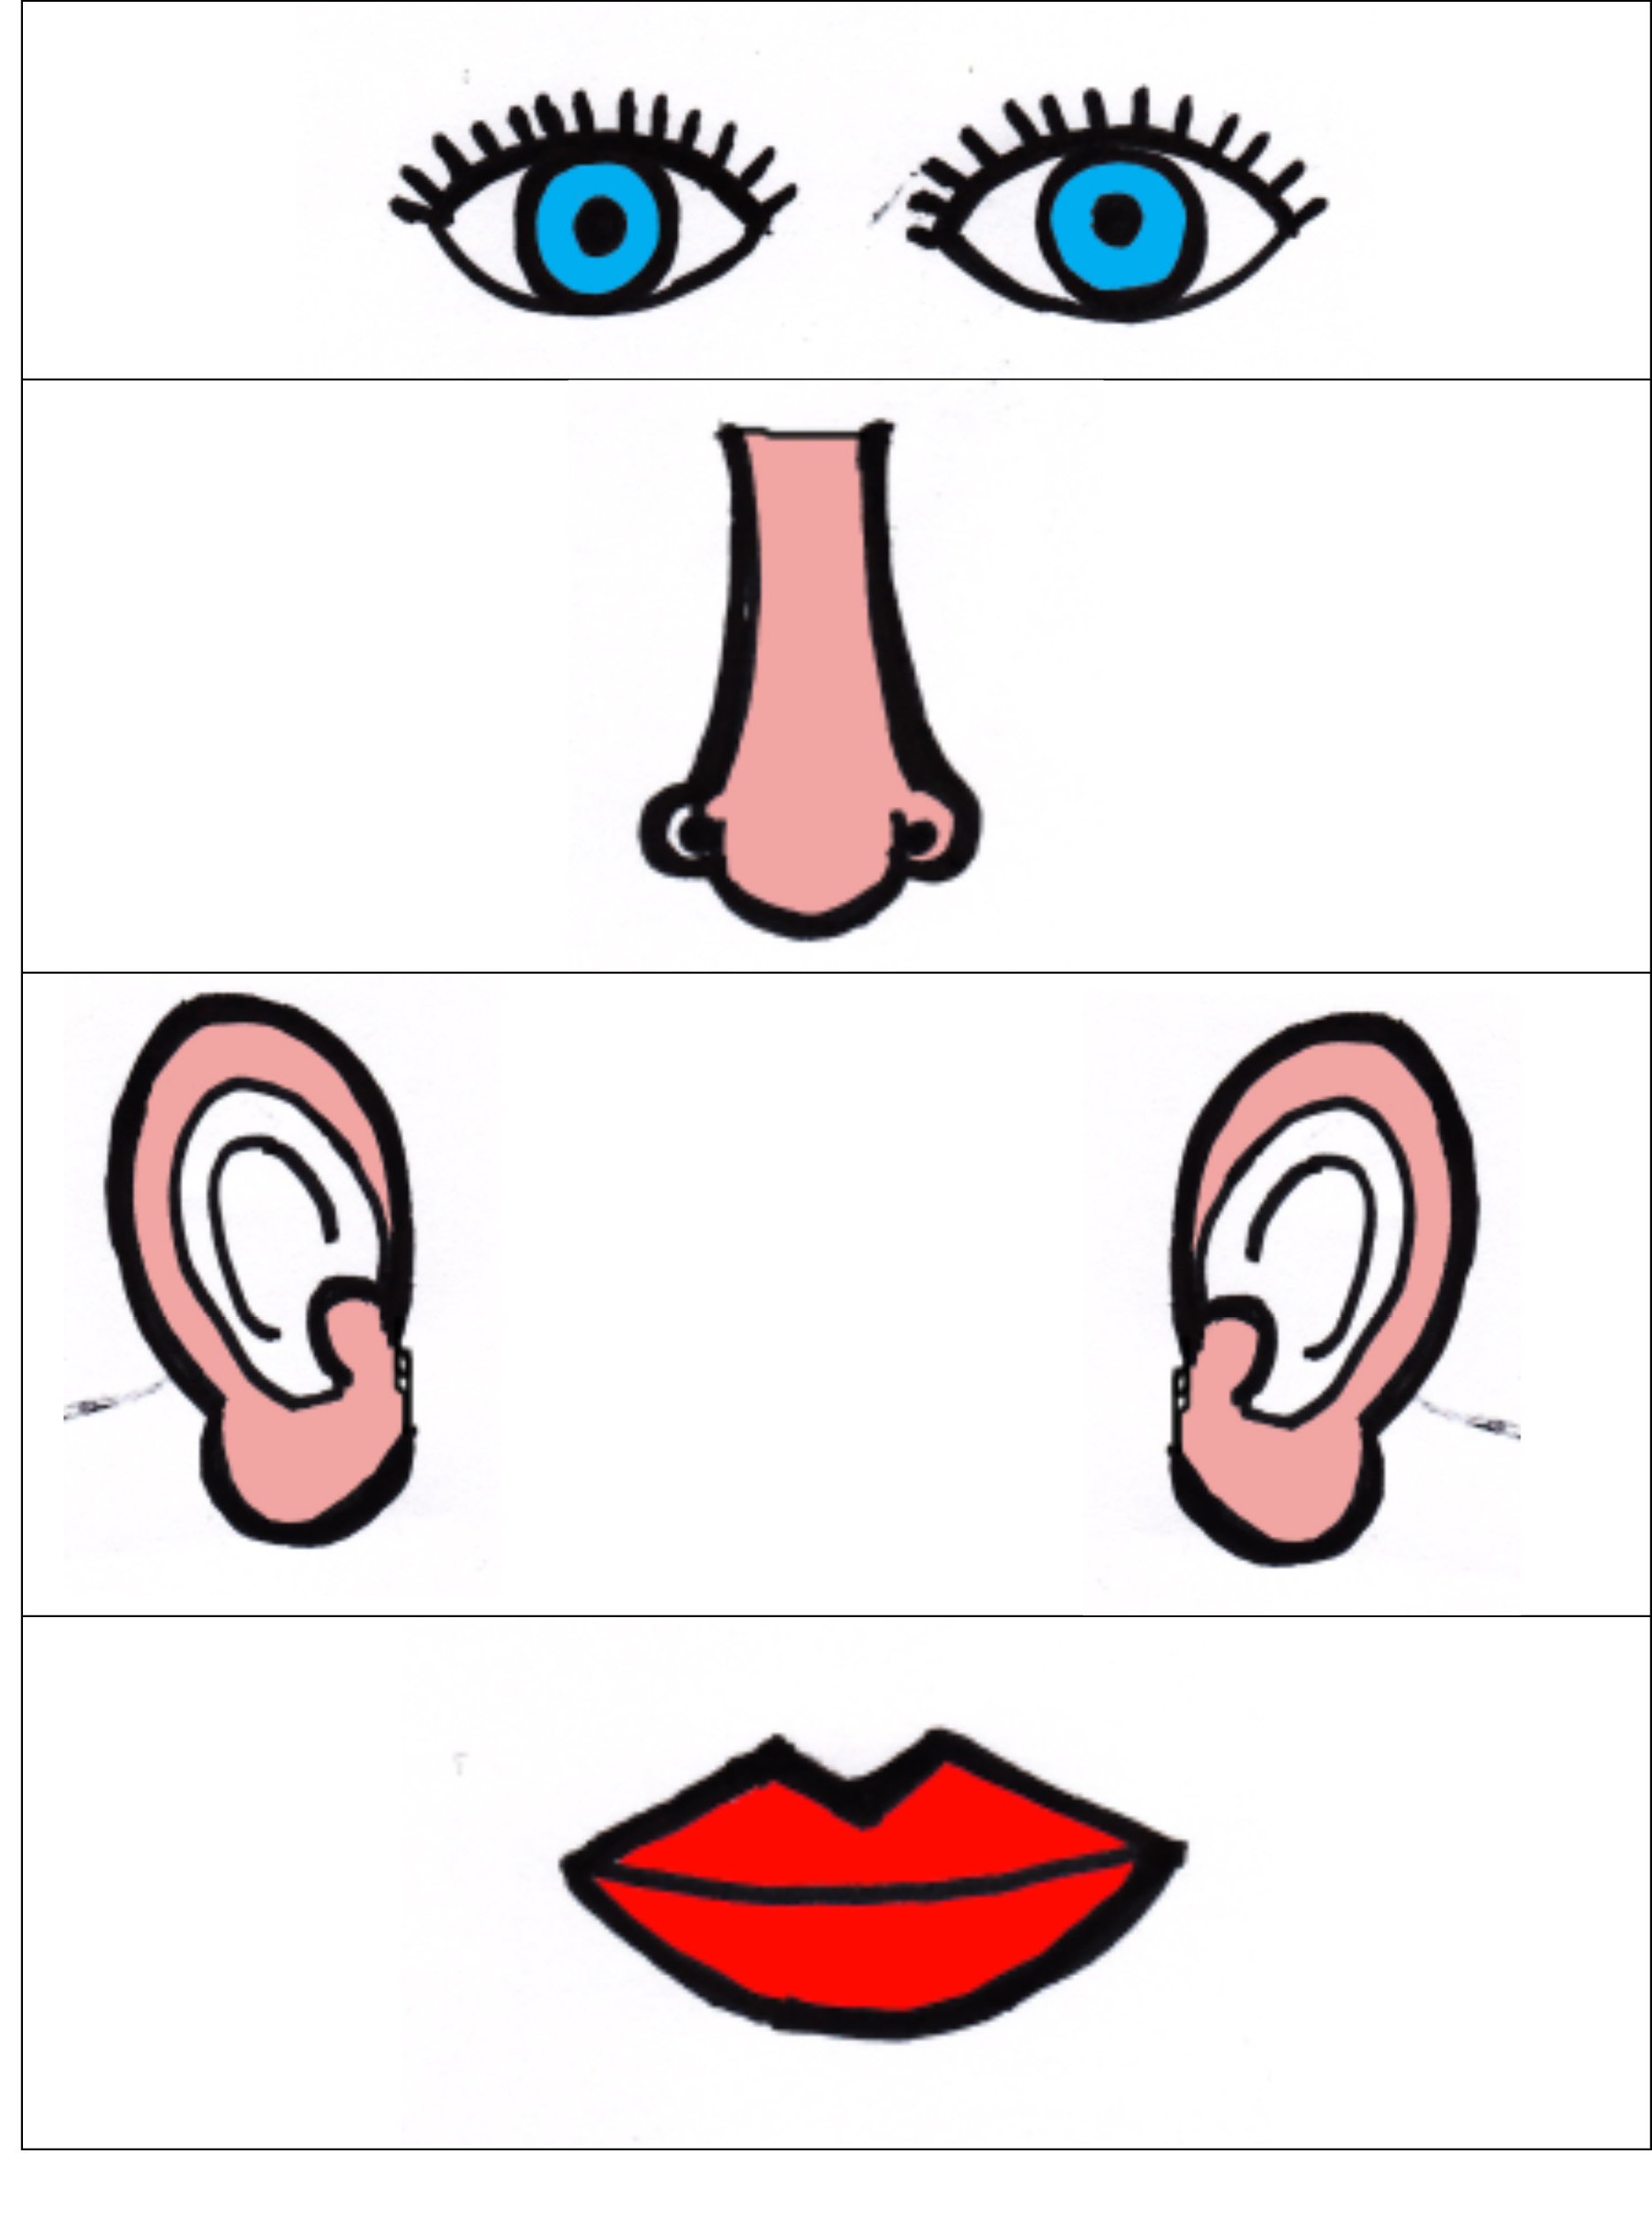 Нос рот голова уши